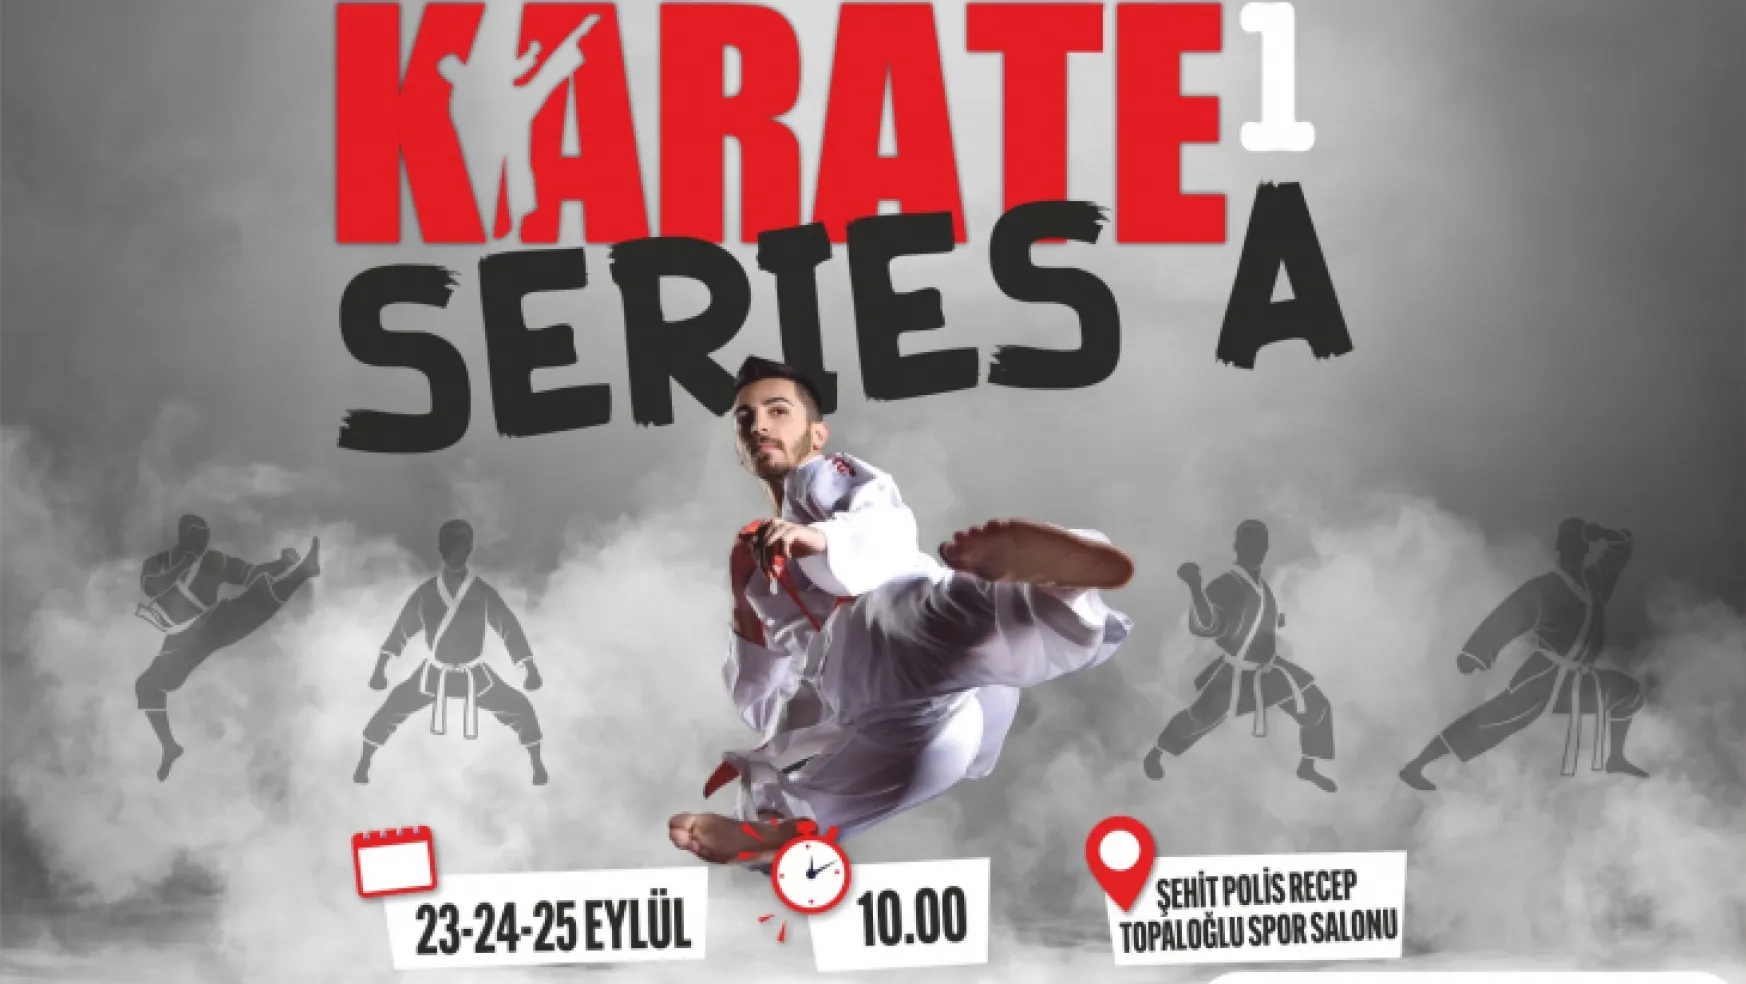 Uluslararası Karate 1 Seri A Şampiyonası başlıyor